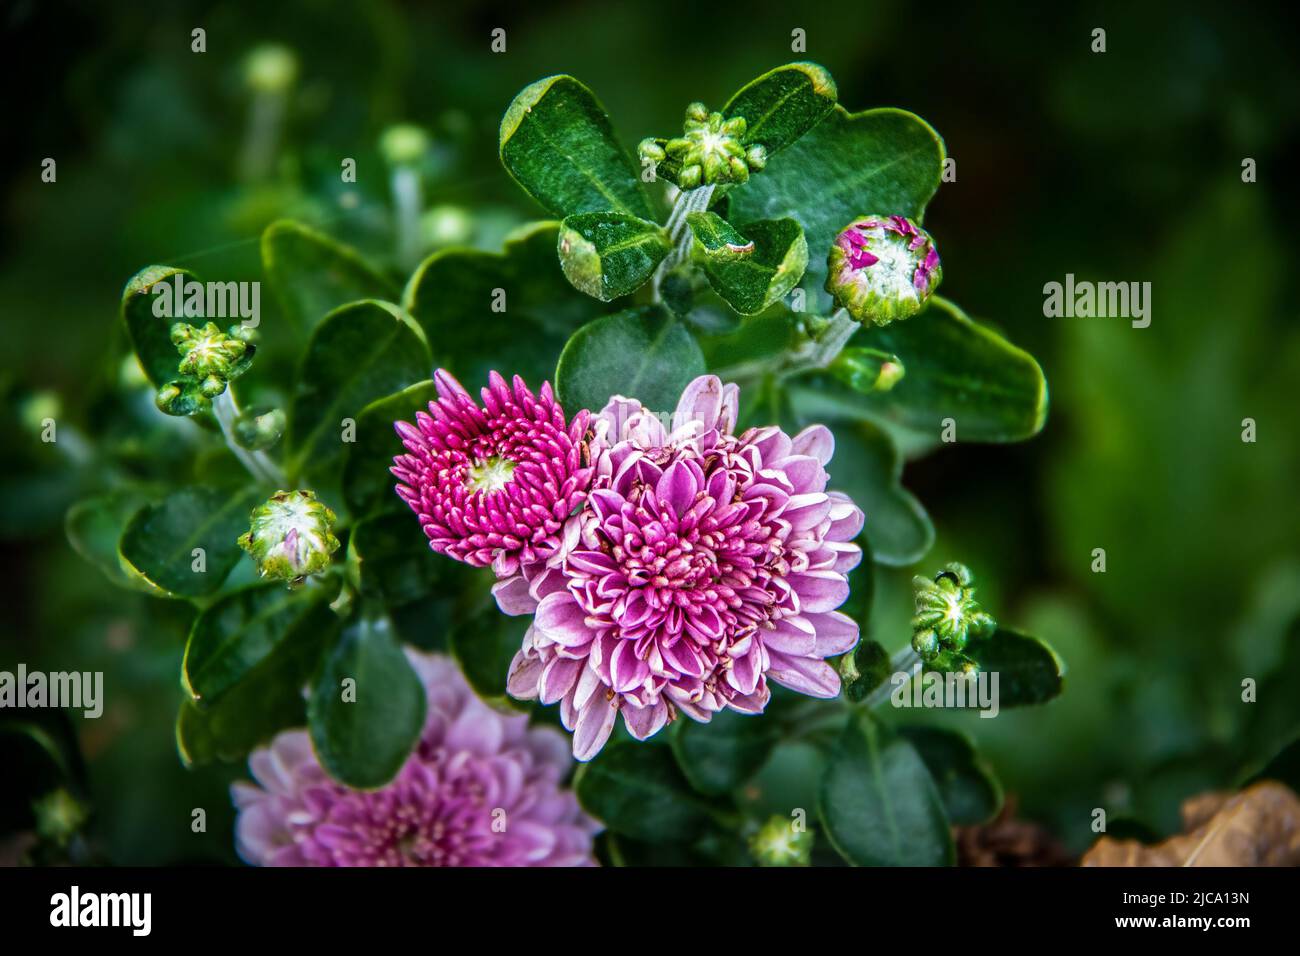 Wunderschöne kleine rosa Mütter, umgeben von verschwommenem Grün - Pollen, die auf Blumen und Blättern verstreut sind - selektiver Fokus und Copyspace Stockfoto